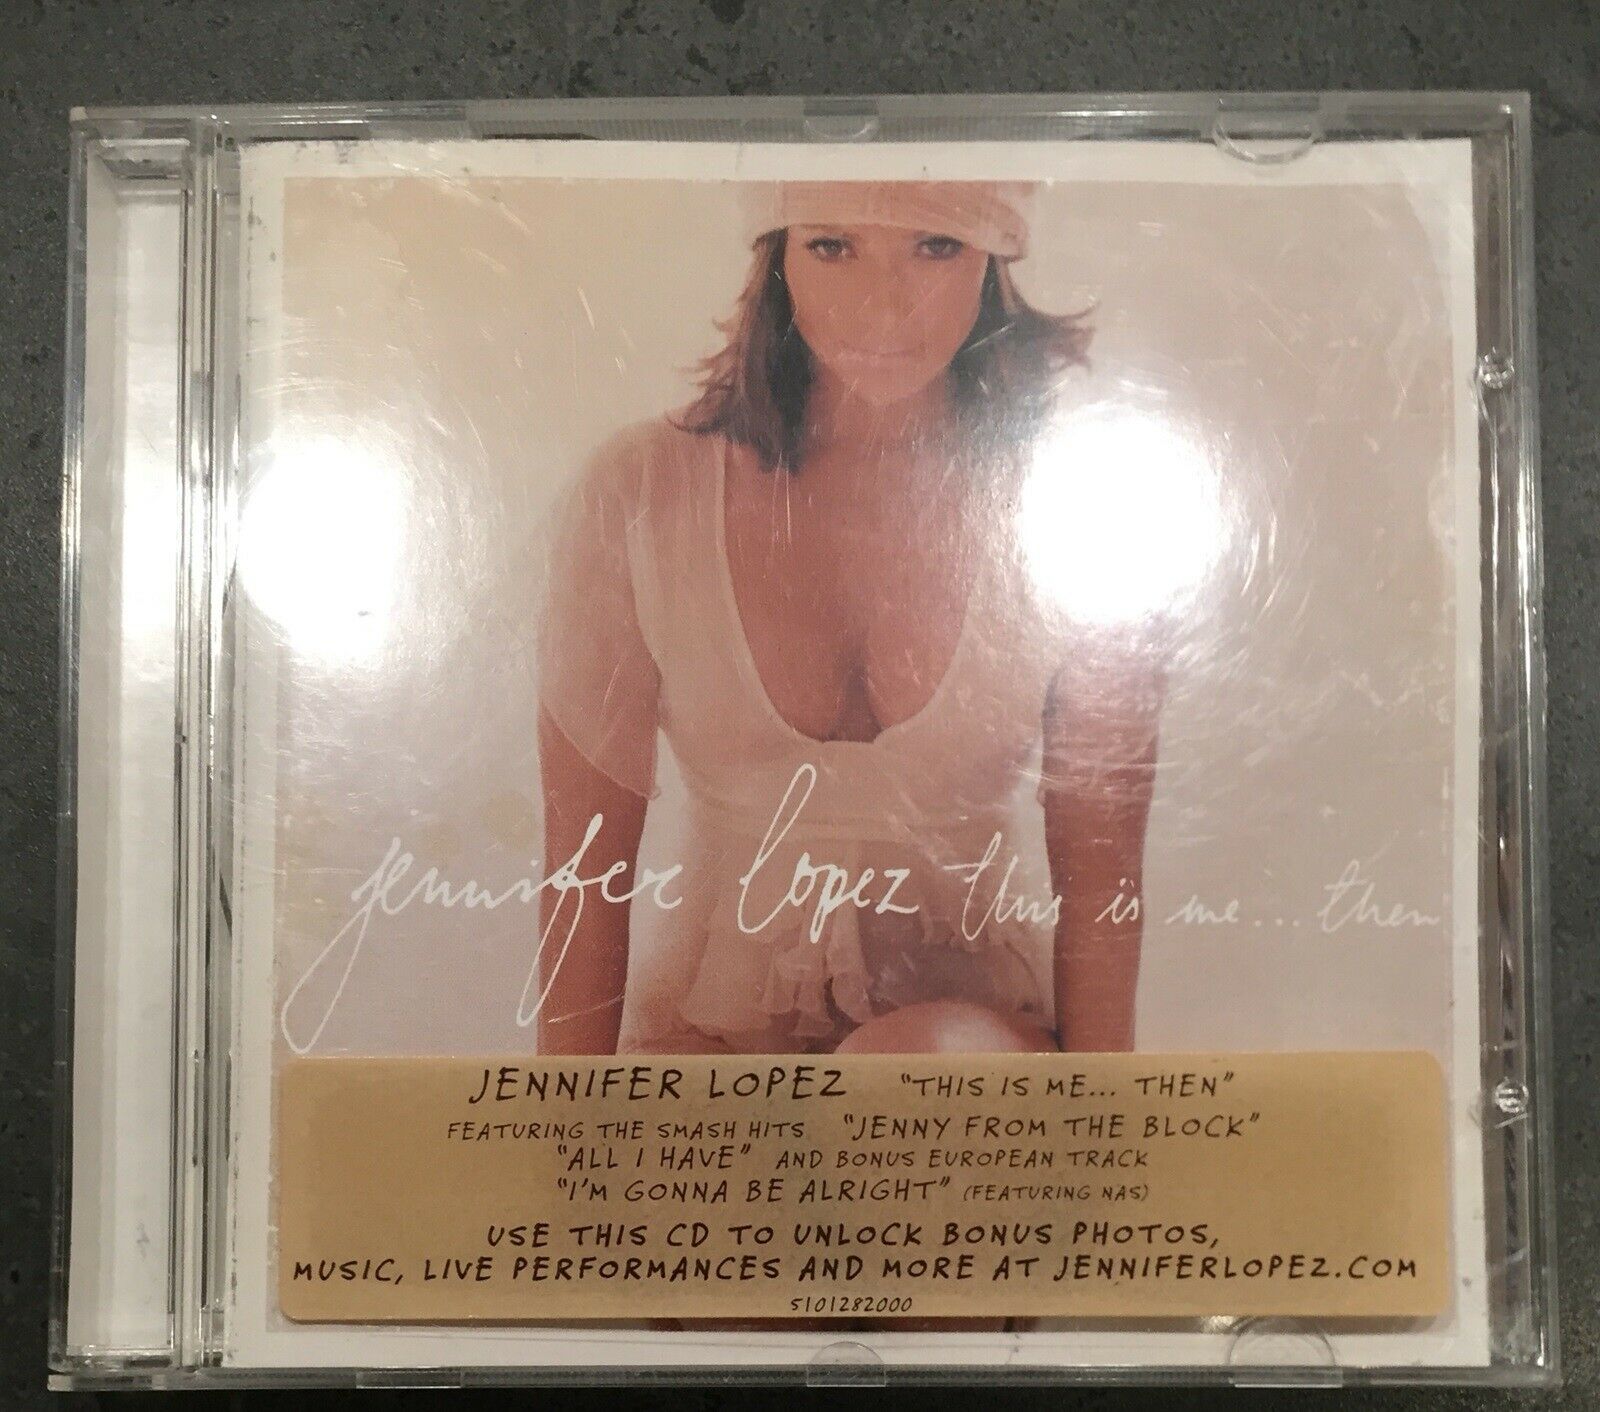 Jennifer Lopez : This is me ... Then”, pop